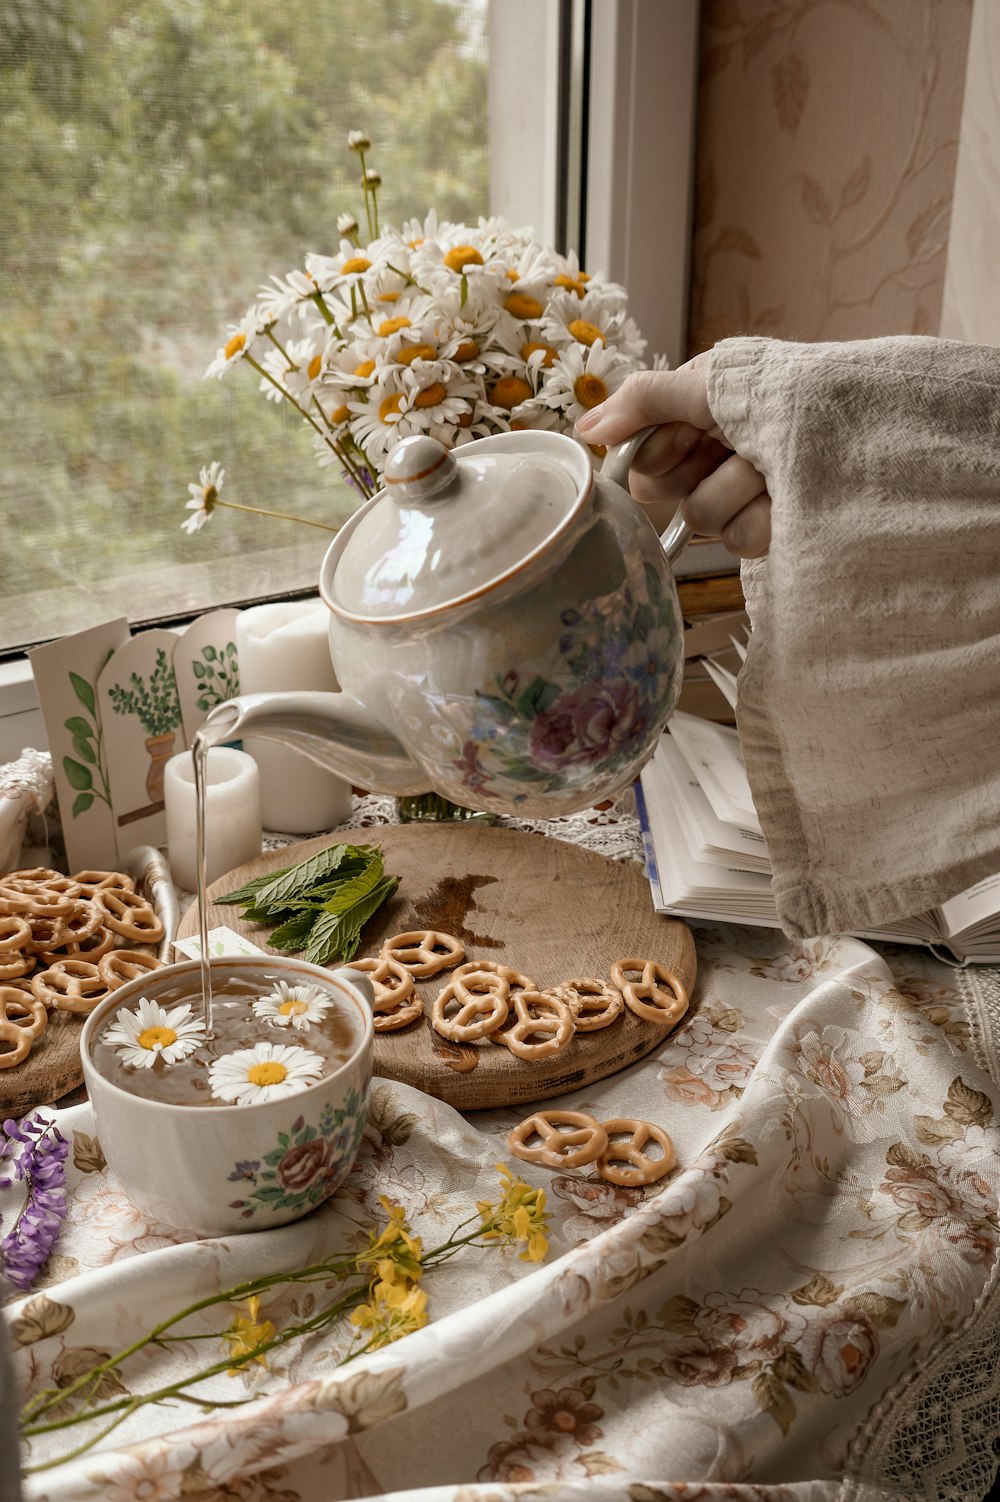 personne tenant une théière en céramique blanche versant un liquide blanc sur une tasse à thé en céramique blanche